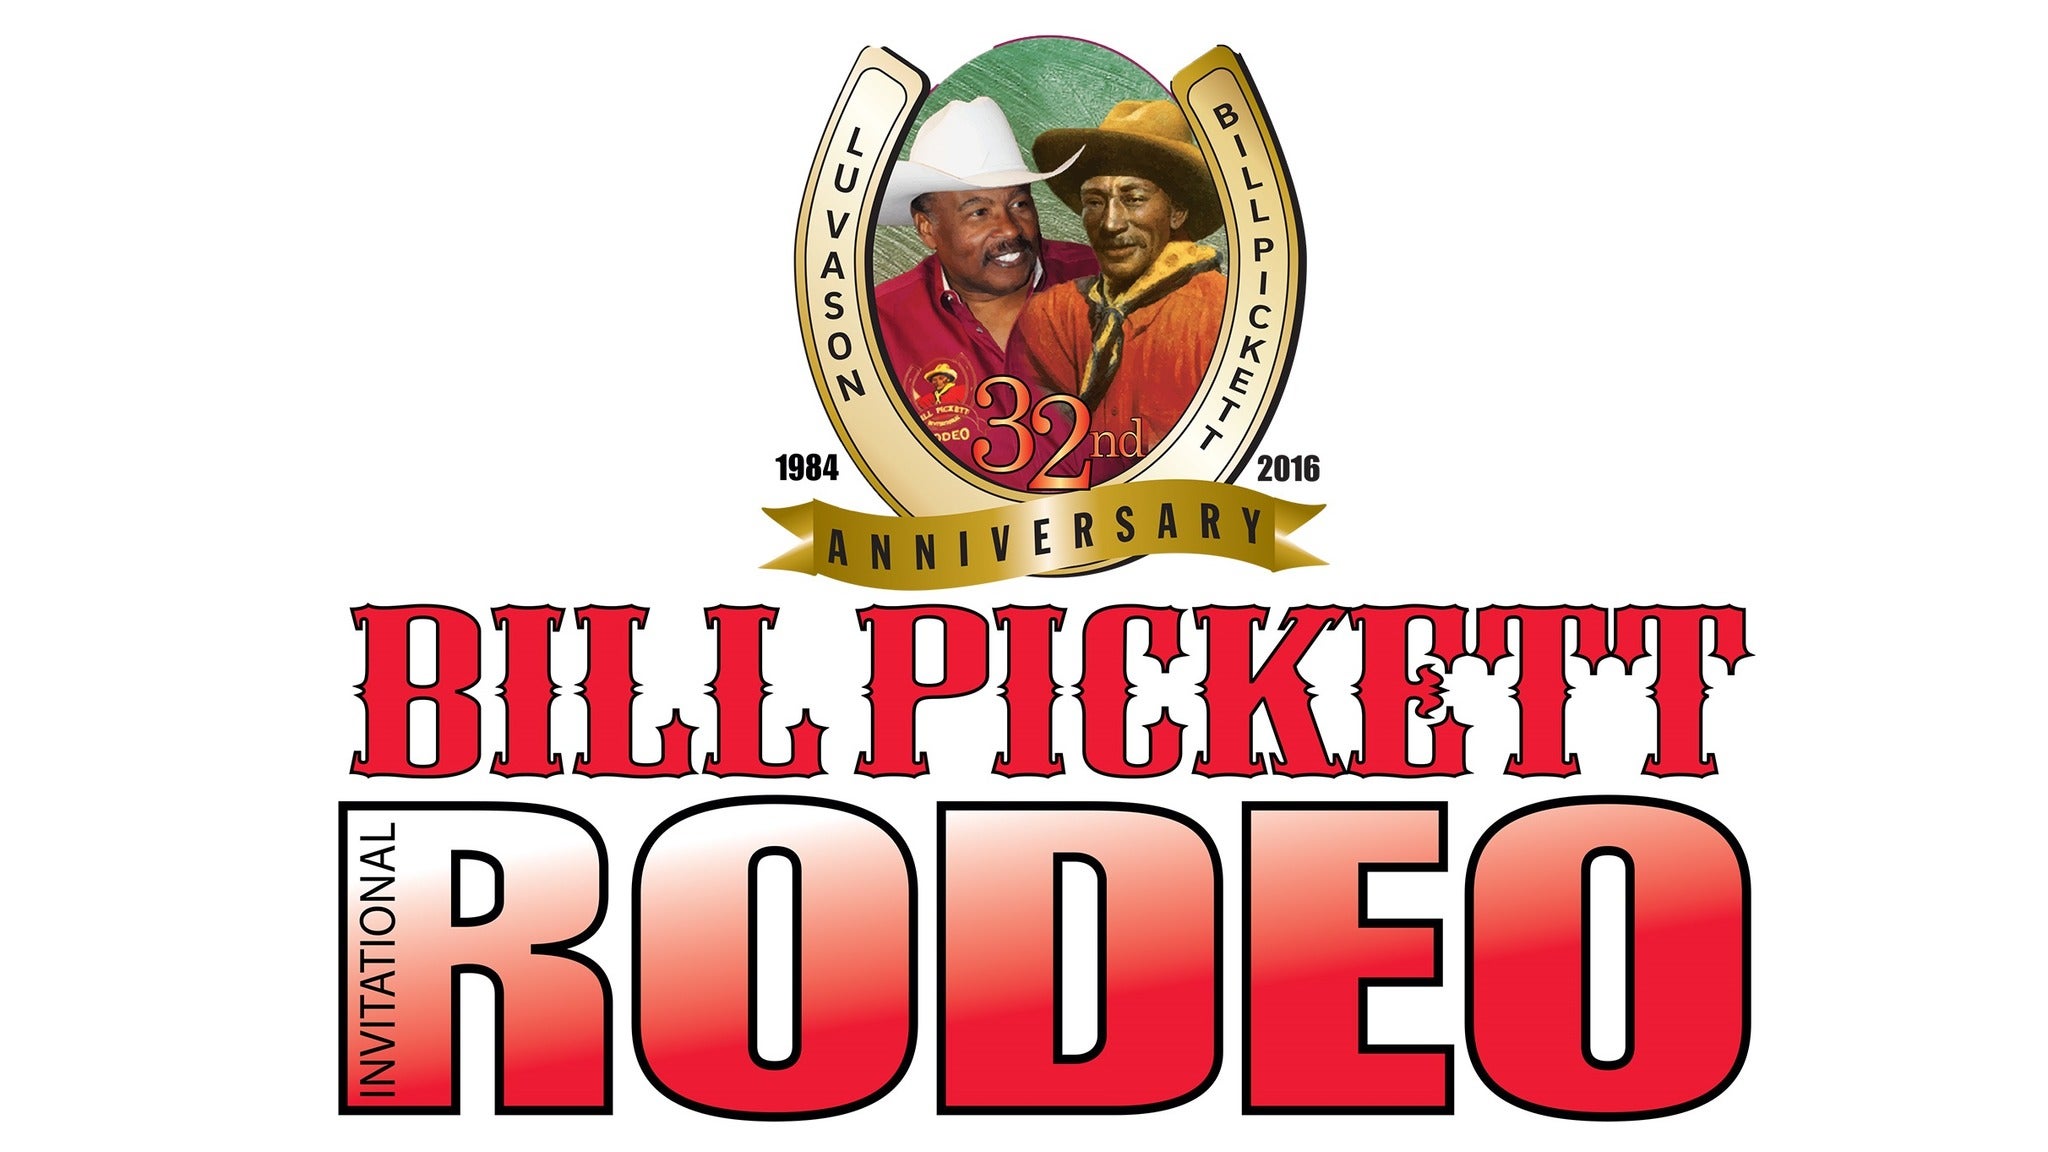 Bill Pickett Invitational Rodeo presale information on freepresalepasswords.com